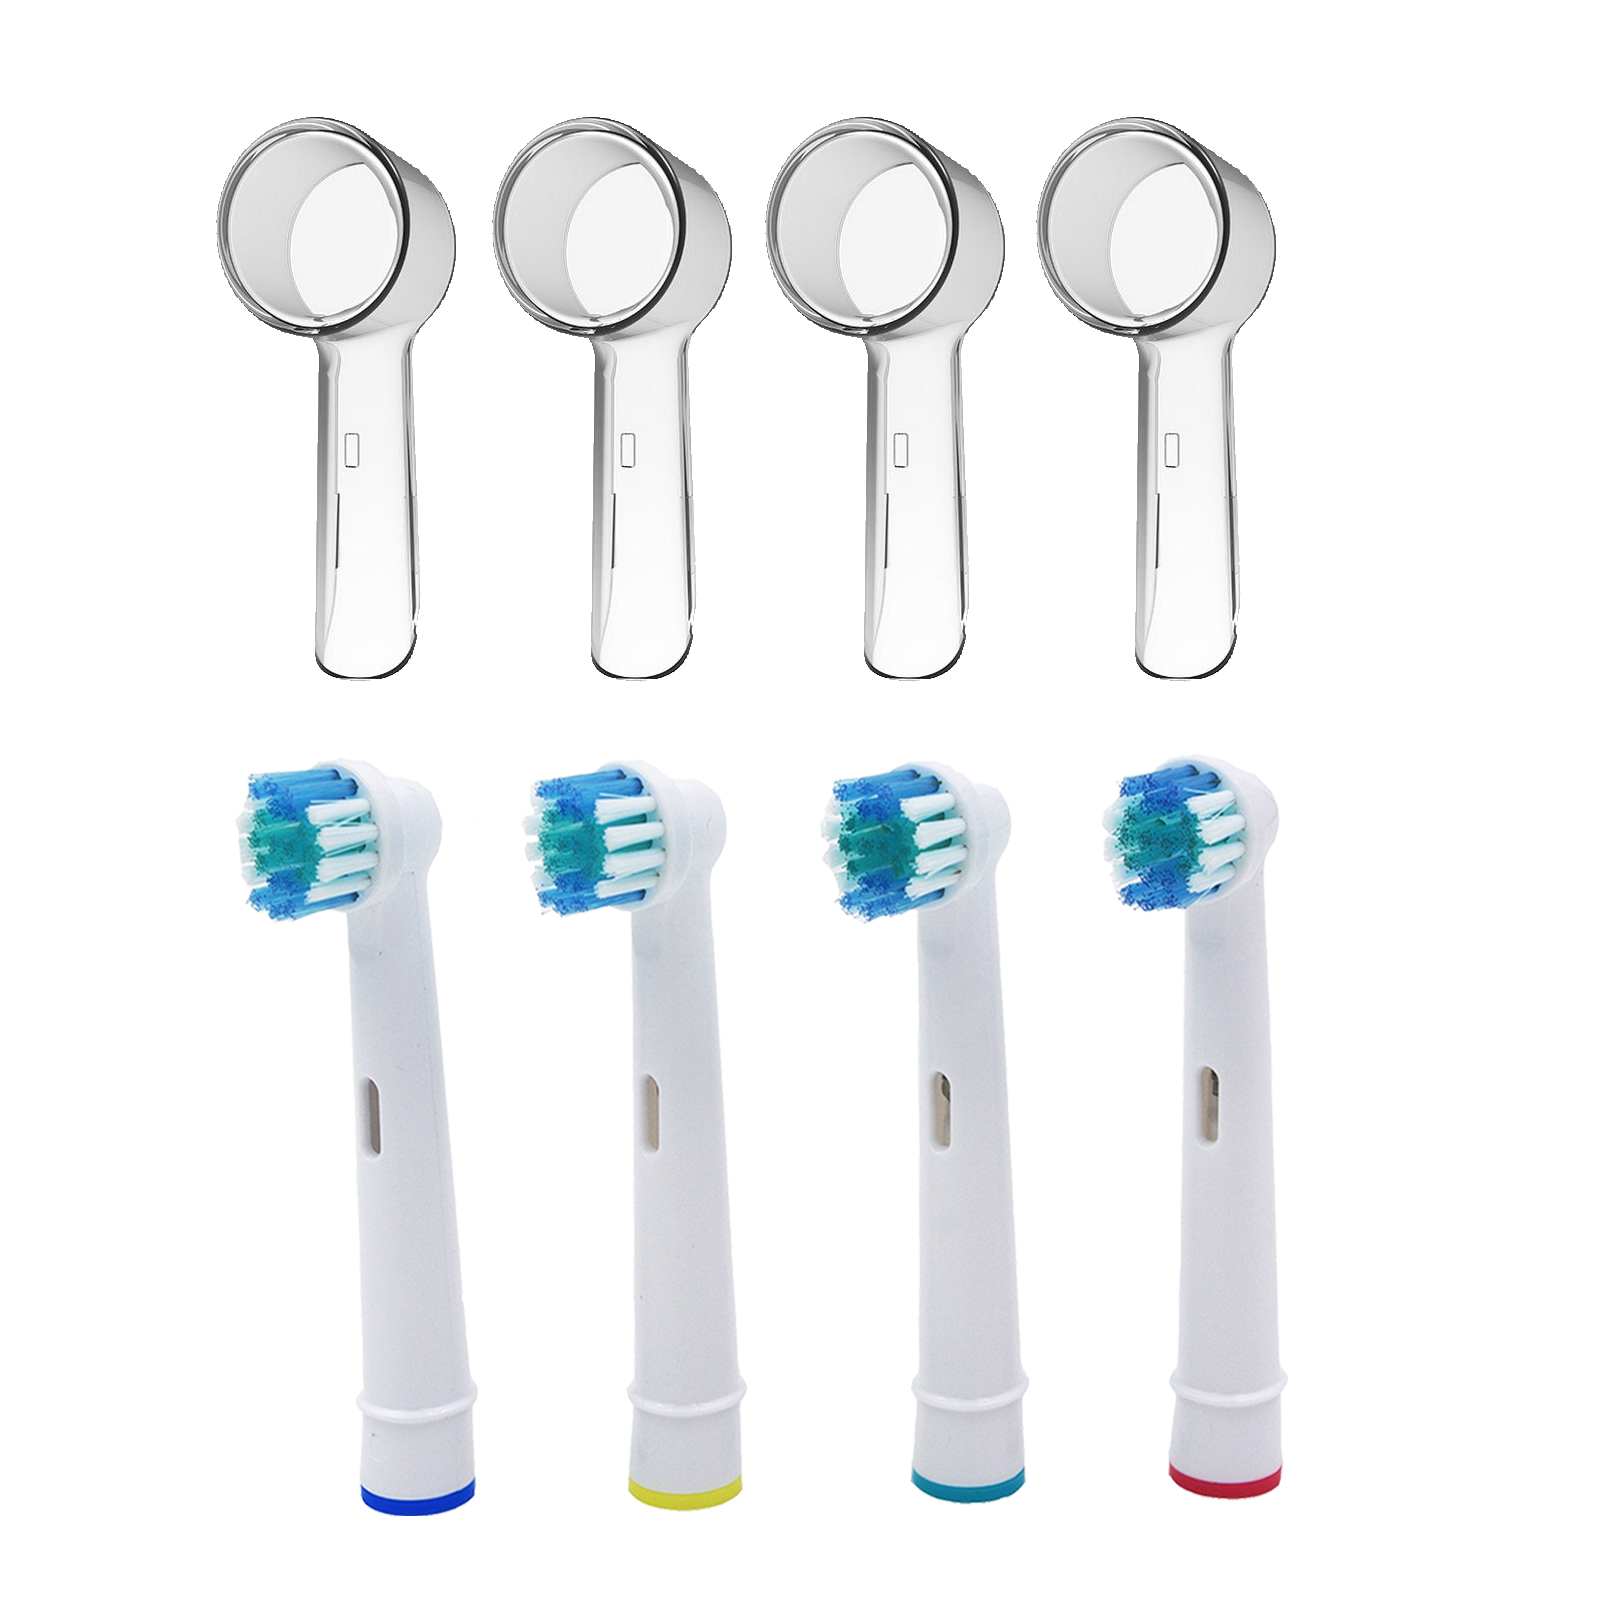 Udskiftning af børstehoveder til oral-b elektrisk tandbørste passer til avanceret effekt / pro sundhed / triumf /3d excel / vitalitet præcision ren: 4 sæt børstehoveder